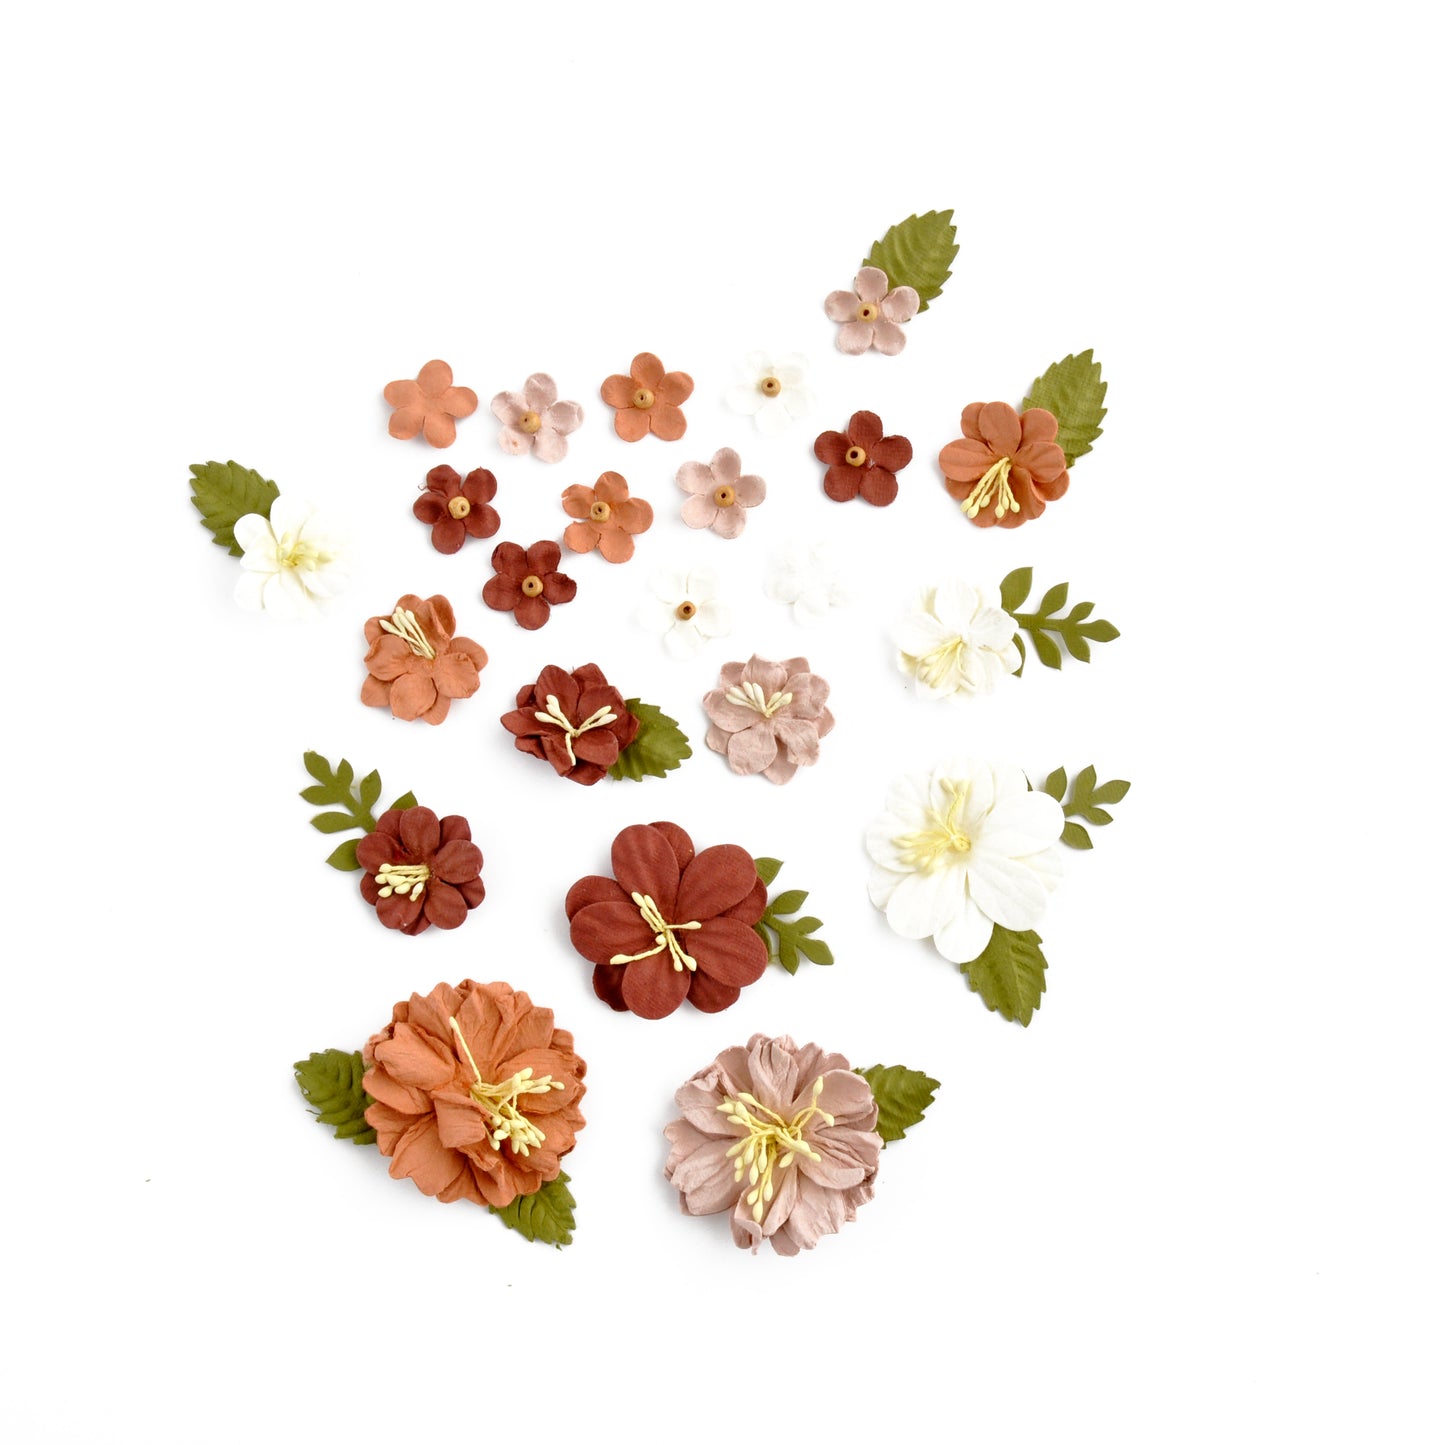 Handmade Flowers - Vintage